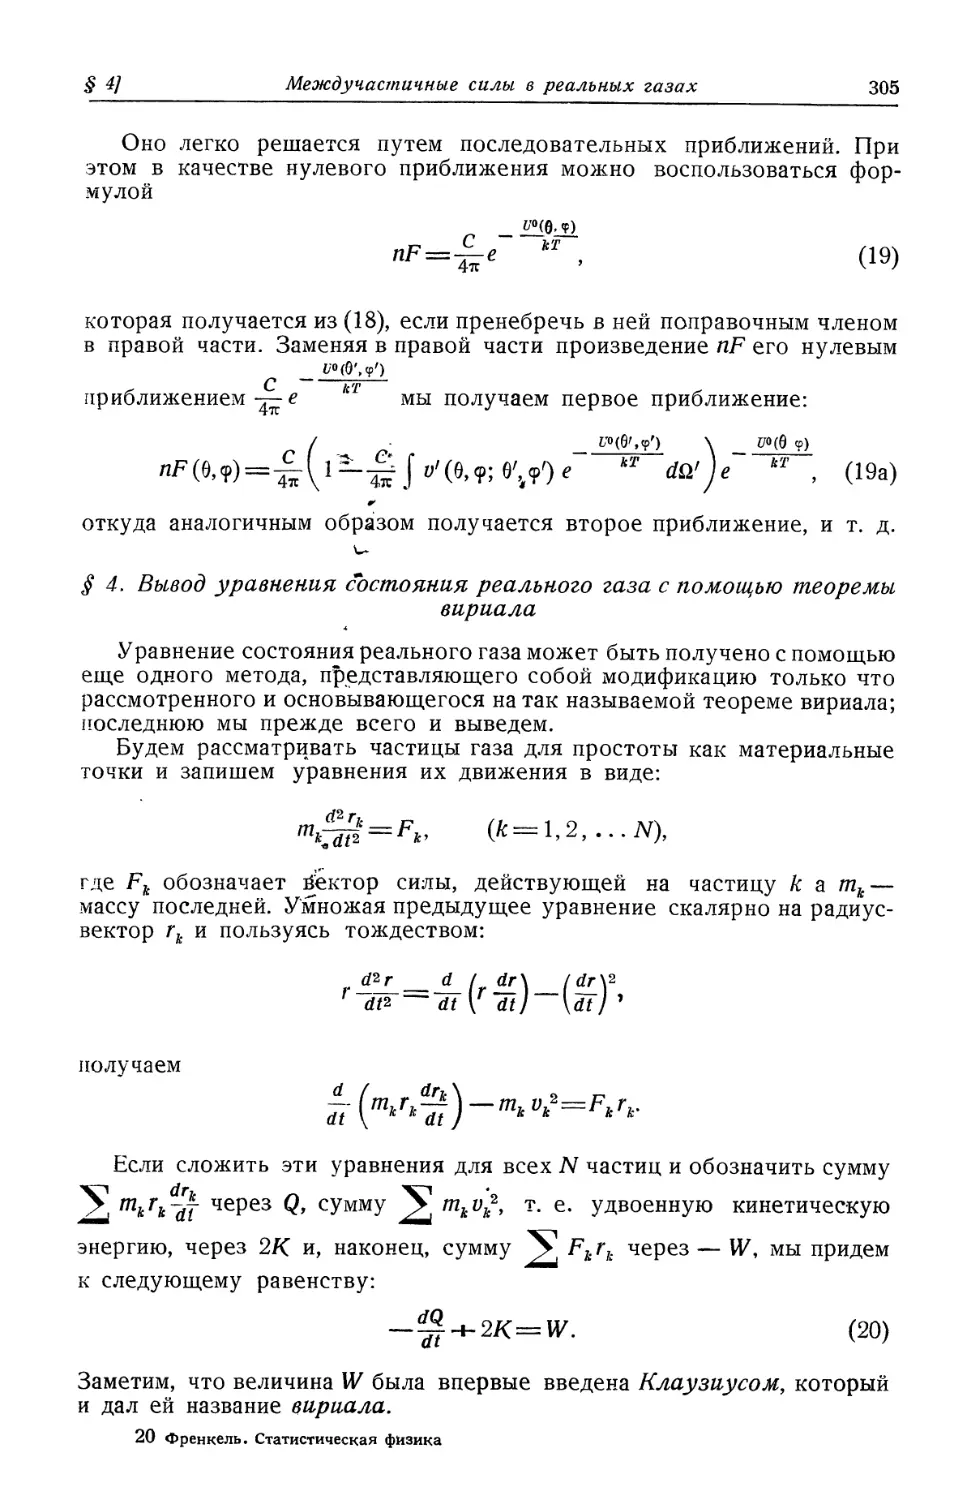 § 4. Вывод уравнения состояния реального газа с помощью теоремы вириала